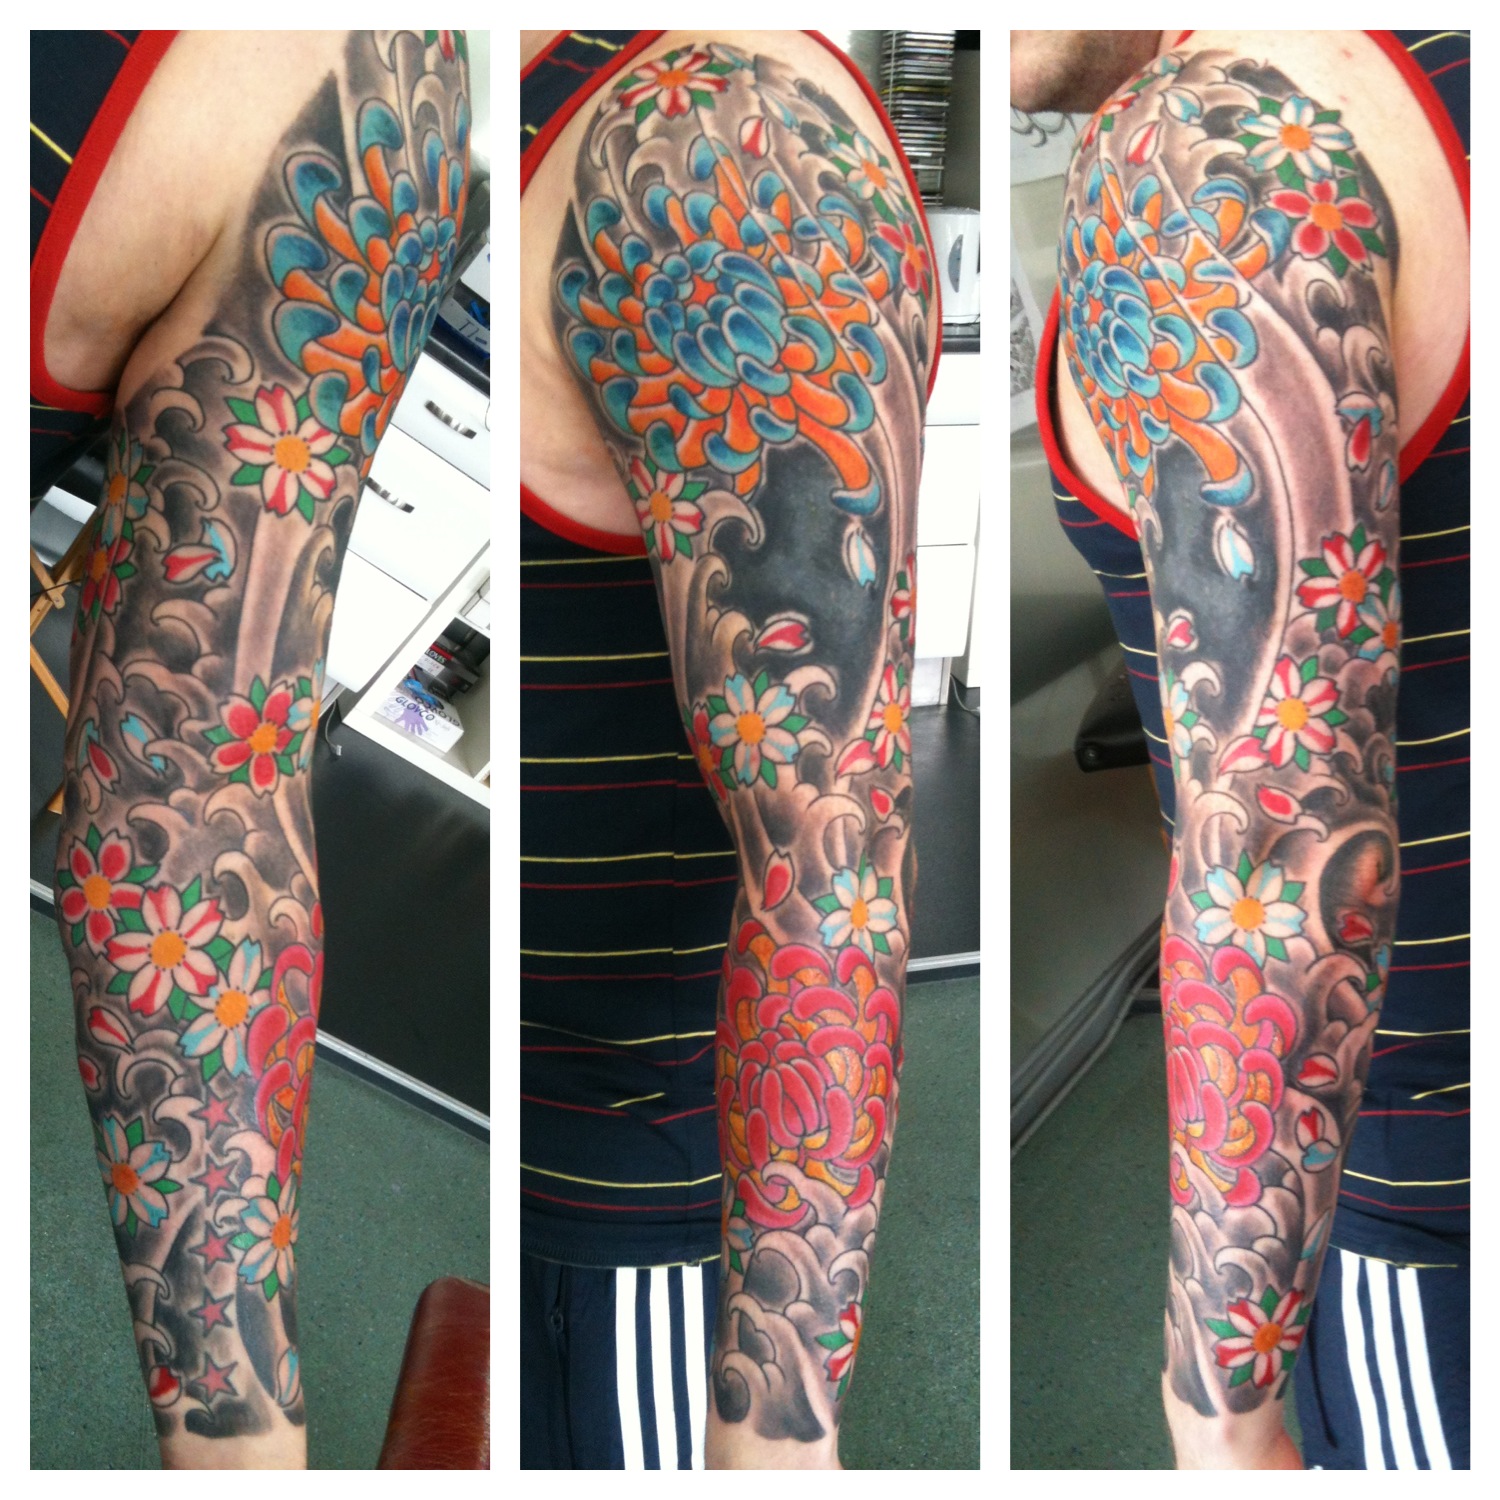 Irish Street Tattoo Japanese sleeve with cover-up. | IRISH ...